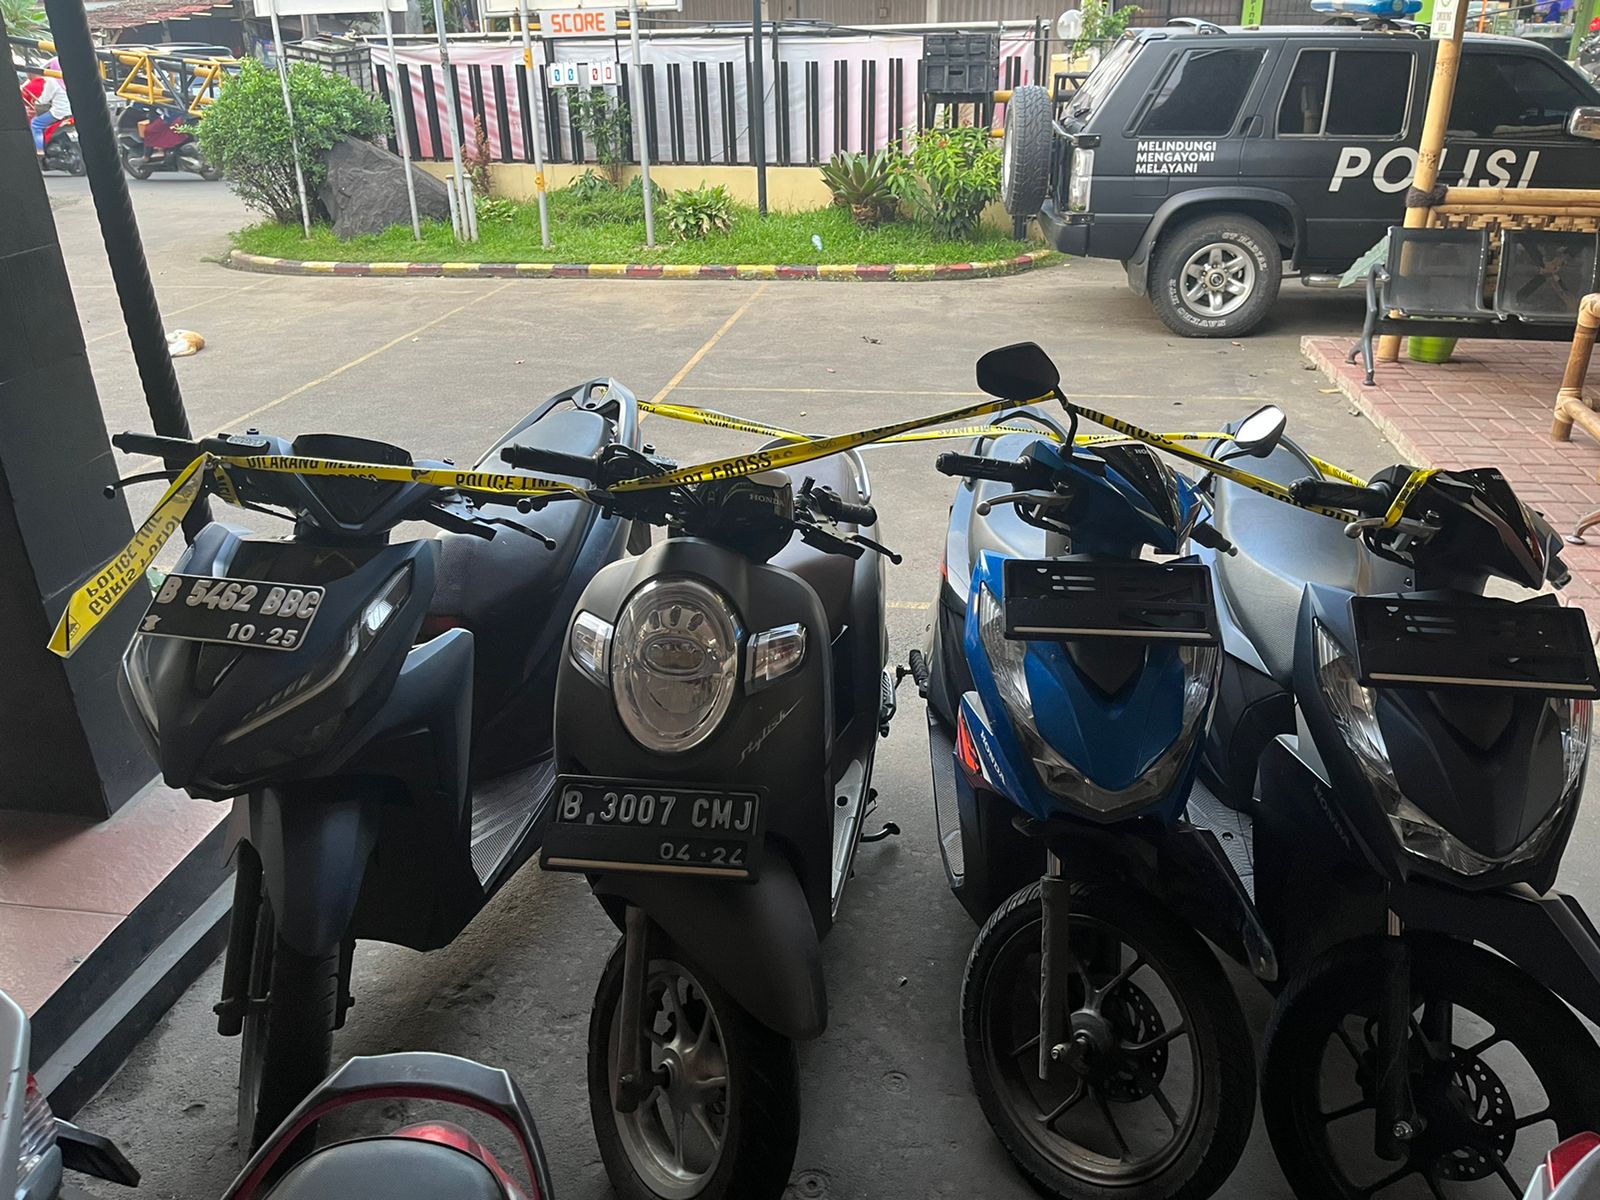 Warga Tangerang Wajib Pasang Ini di Sepeda Motornya, Empat Pelaku Curanmor Dibekuk Polisi Berkat Alat GPS